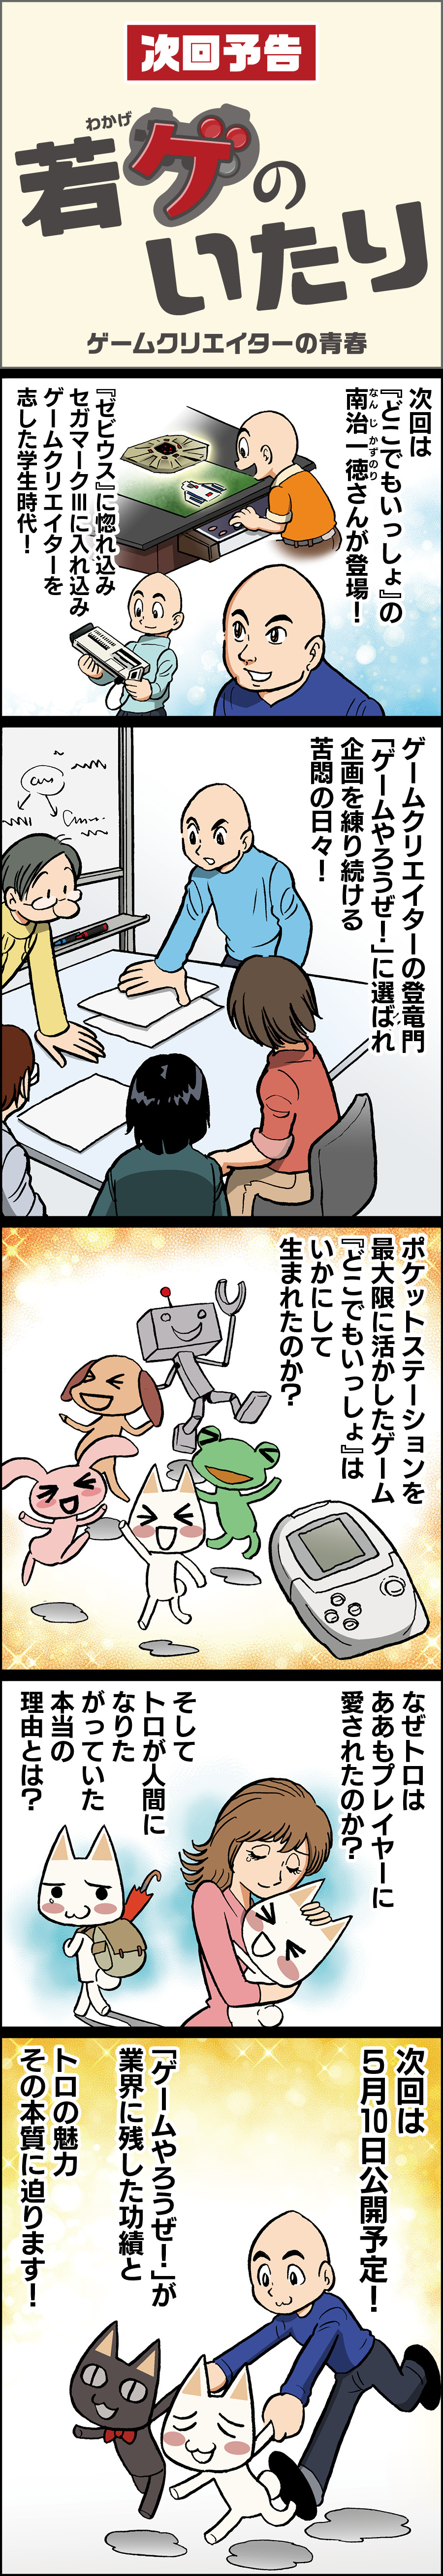 田中圭一連載 バーチャロン編 ロボットが主役のゲーム は絶対にヒットしない 亙重郎はどのように社内の反対を乗り越え 業界のジンクスを覆したのか 若ゲのいたり